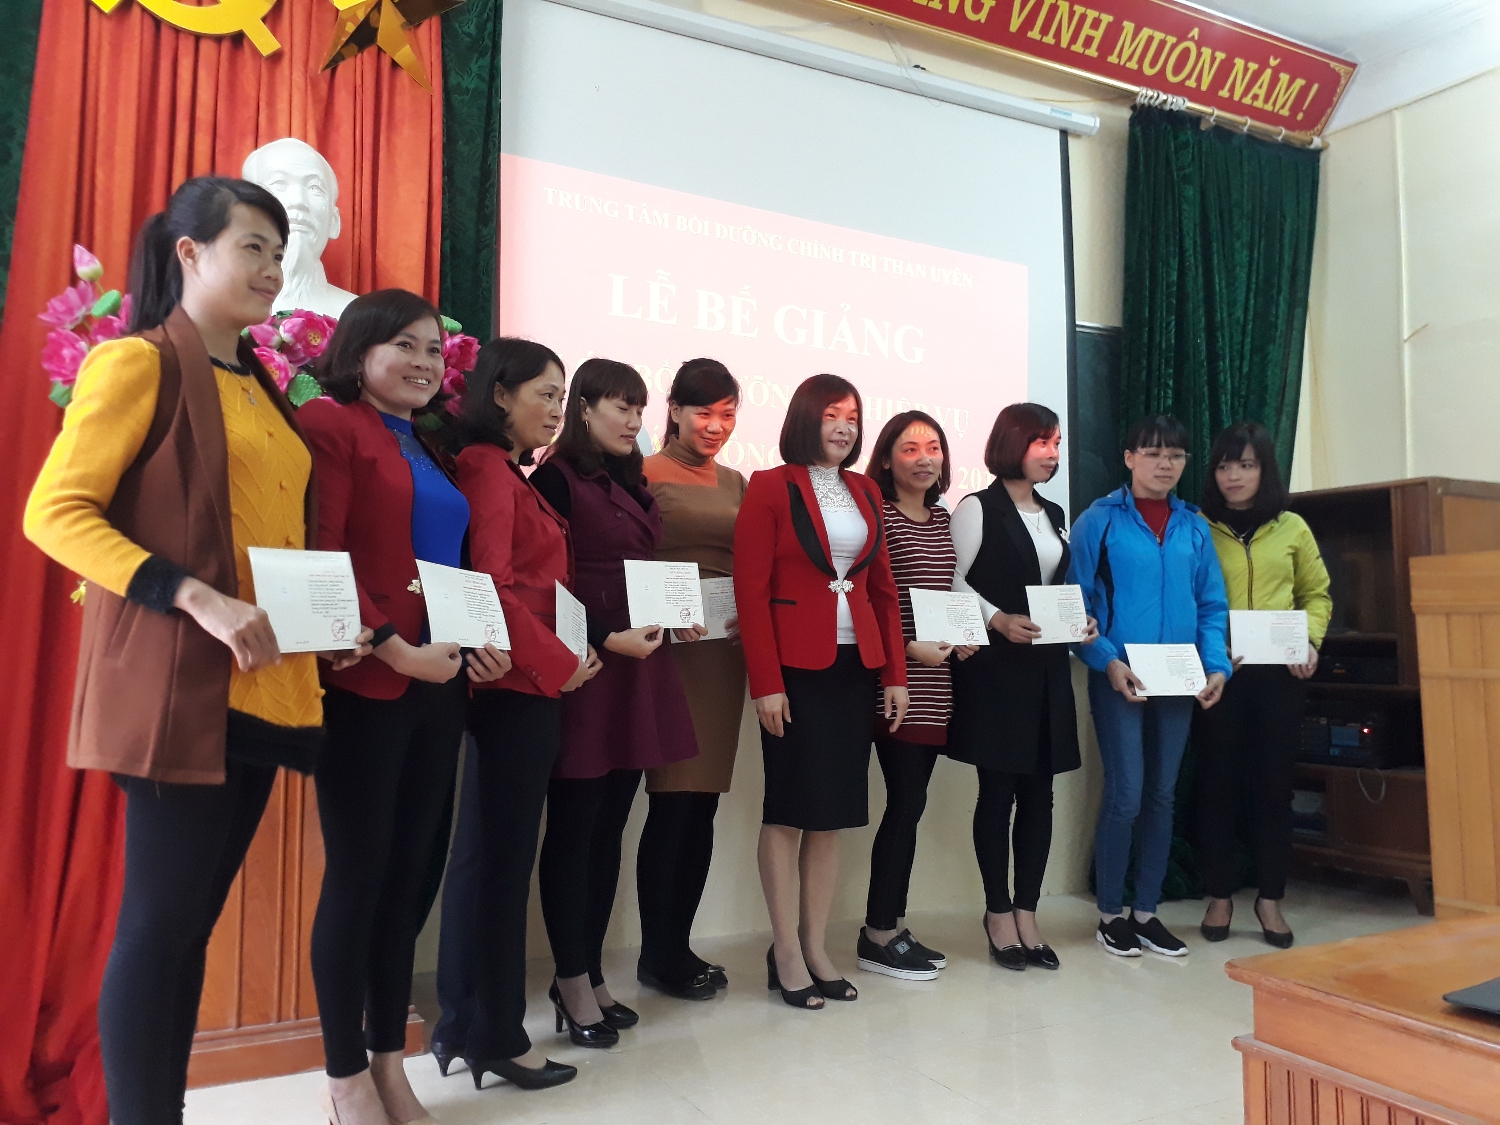 Đồng chí Hoàng Thị Luyến – Chủ tịch Liên đoàn Lao động huyện trao giấy chứng nhận cho các học viên đạt loại Giỏi